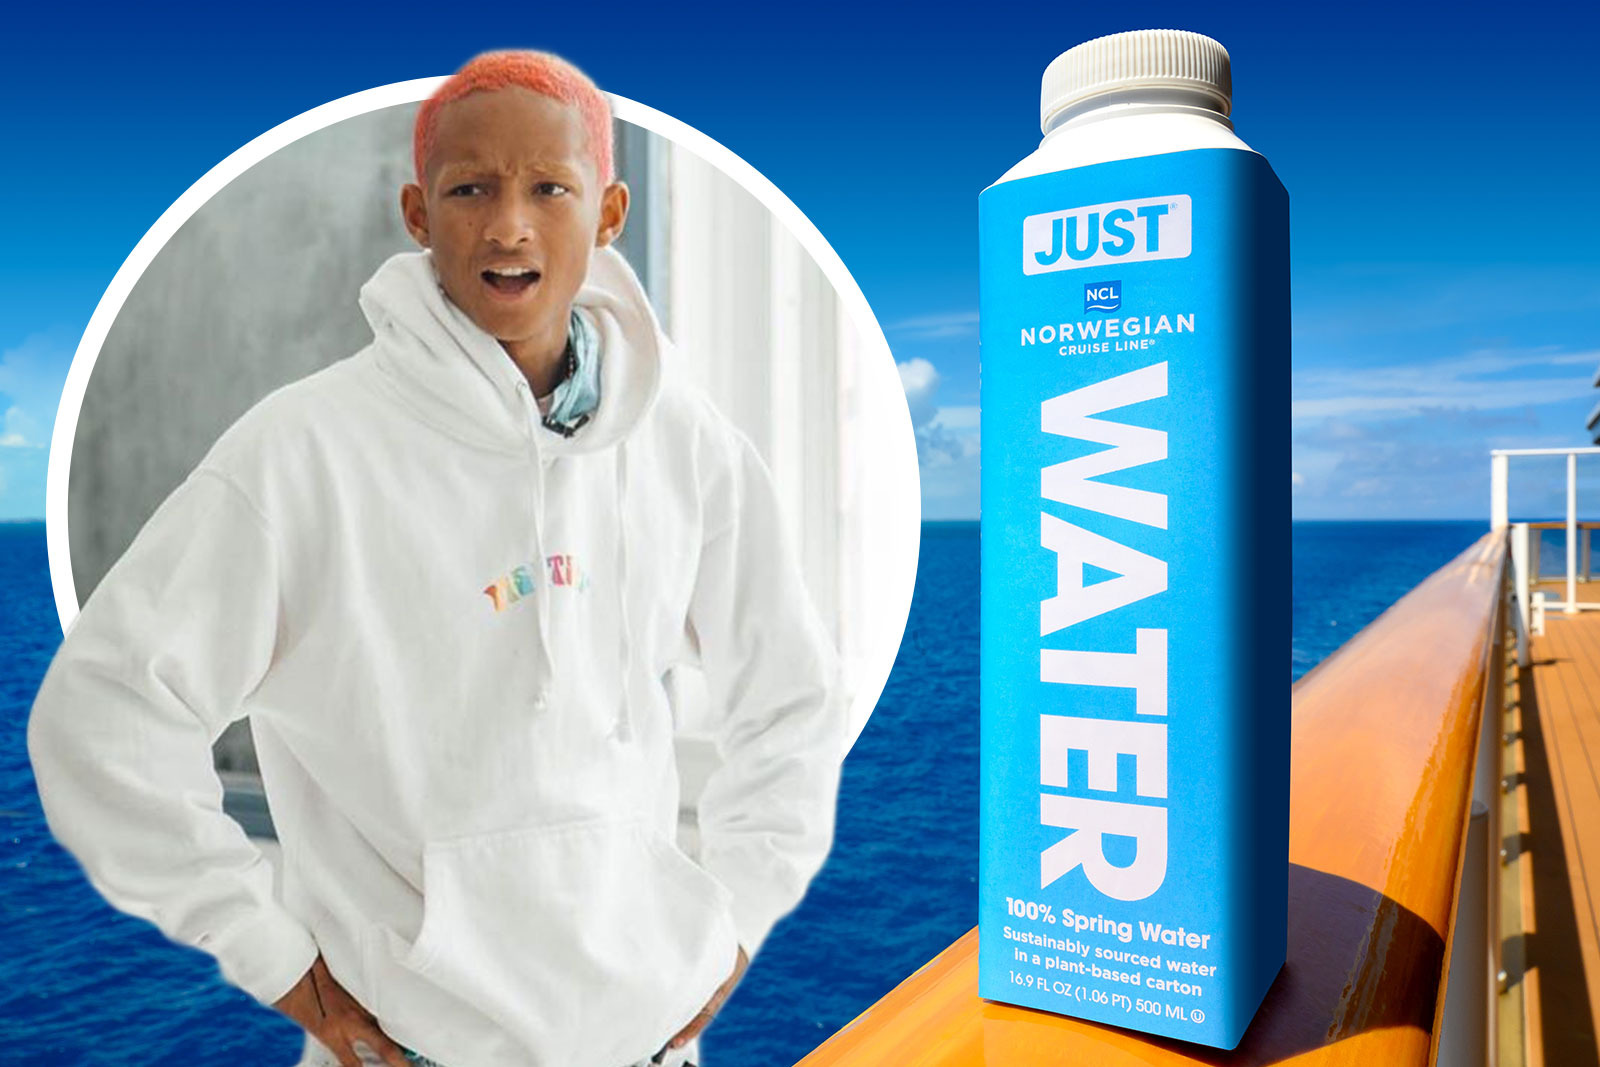 Norwegian Cruise Lines replaces plastic bottles with Jaden Smith's JUST  water - NZ Herald